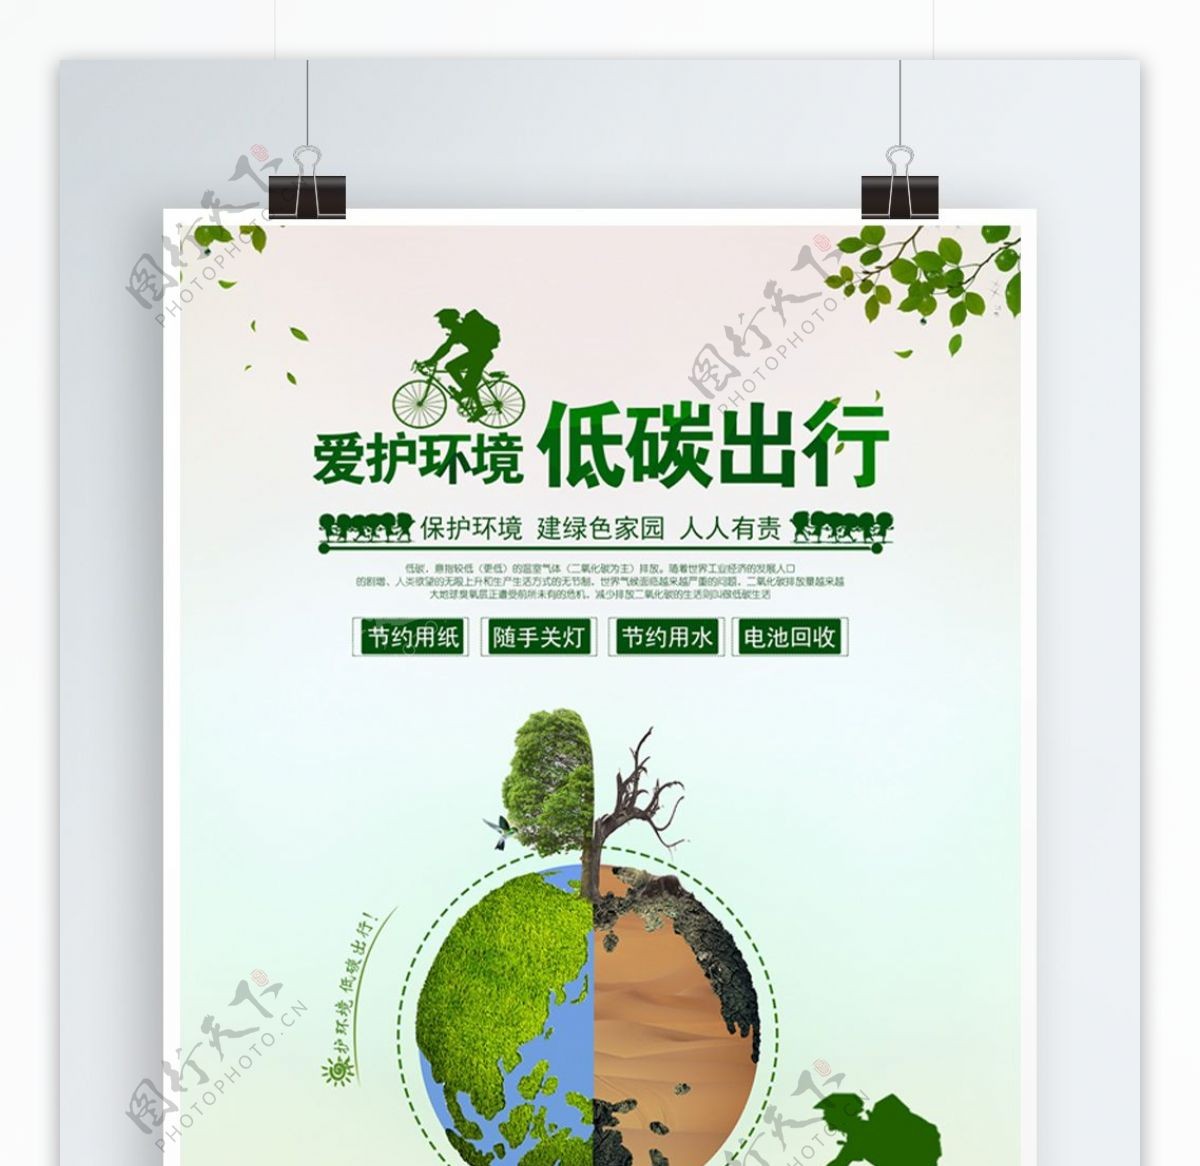 时尚清新绿色爱护环境低碳出行公益宣传海报